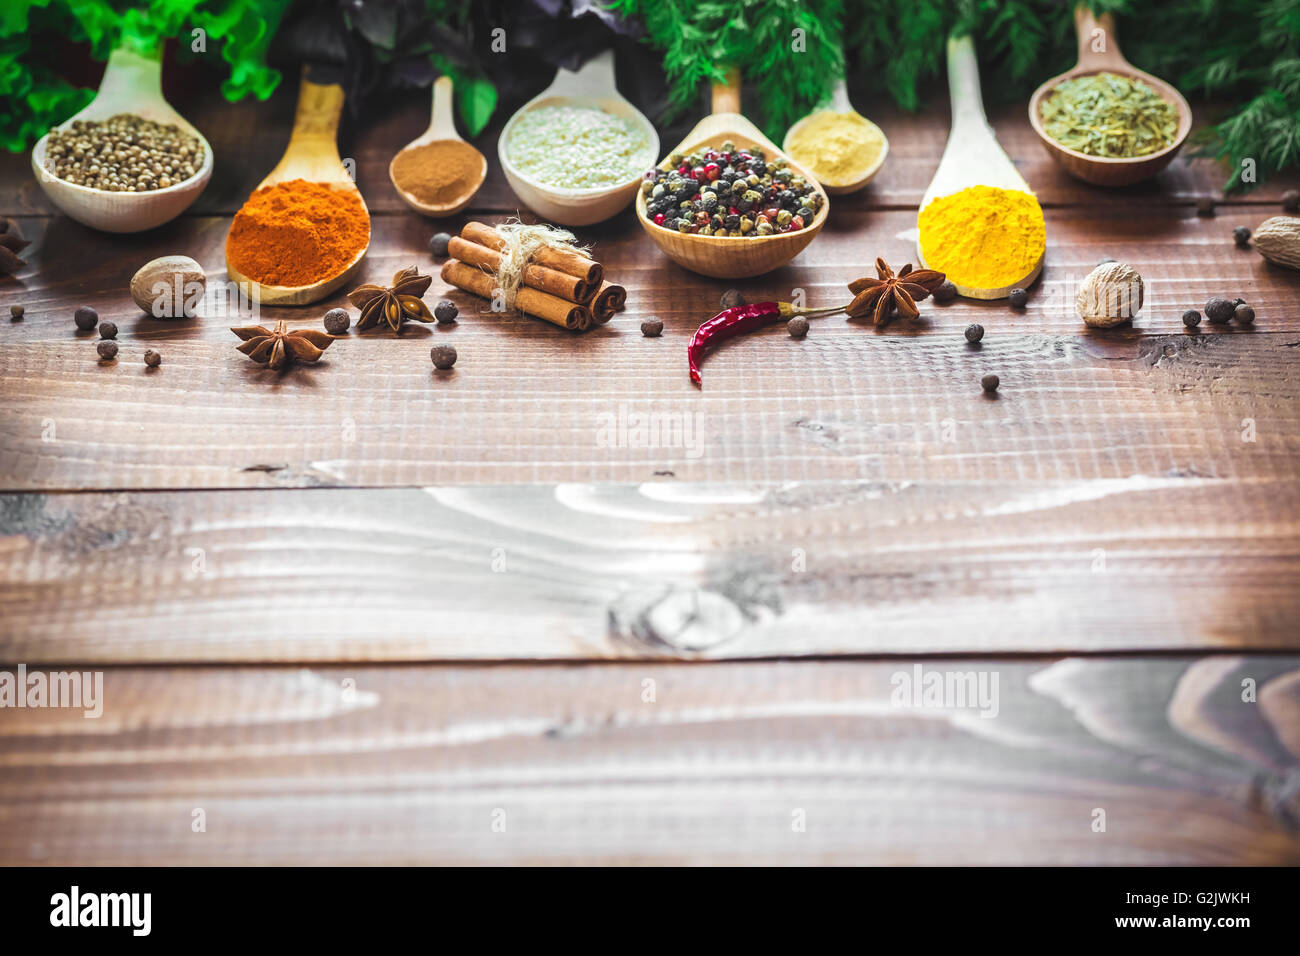 Schöne bunte Gewürze in hölzerne Löffel und Schüsseln mit Salat, Dill und Basilikum auf einem alten Holz- braun Tabelle. freier Speicherplatz für y Stockfoto